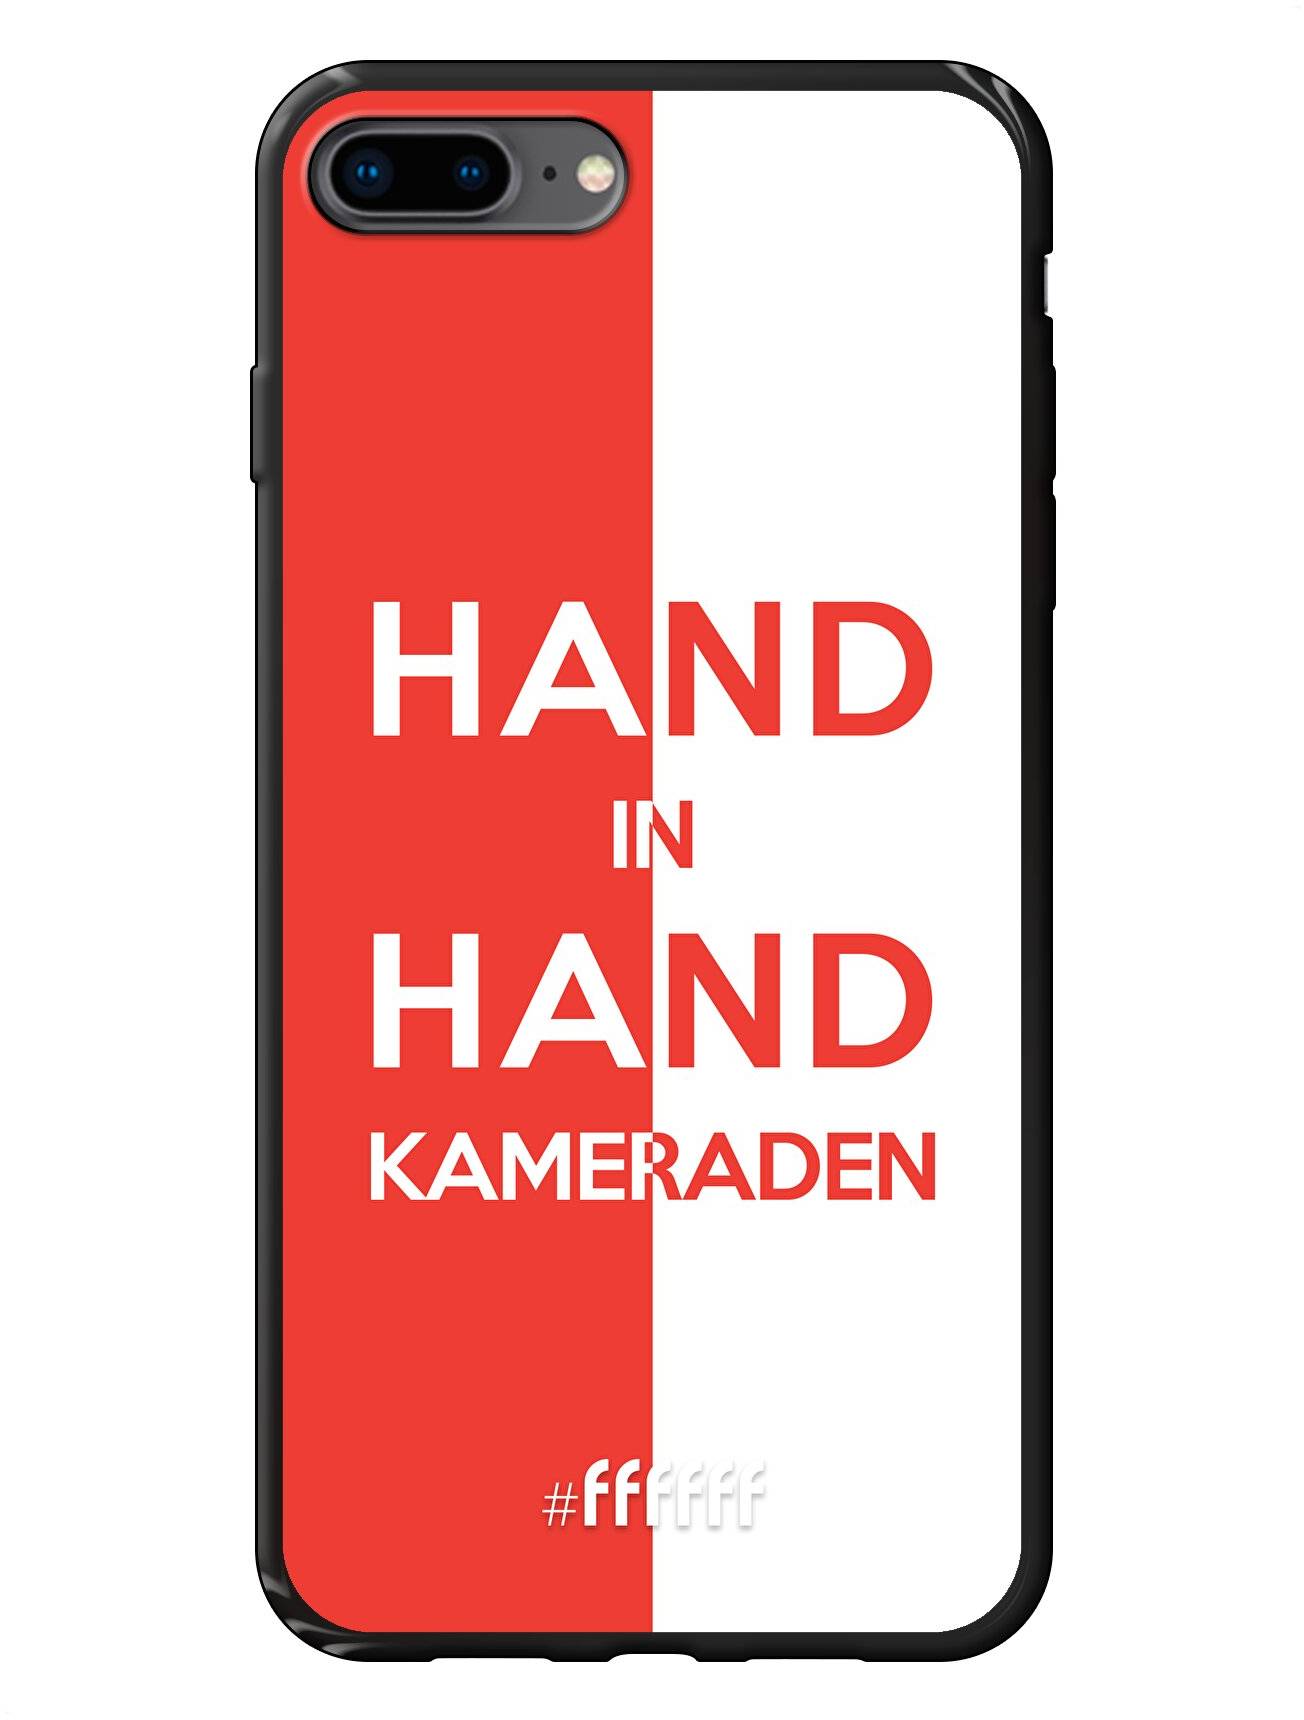 Feyenoord - Hand in hand, kameraden iPhone 8 Plus